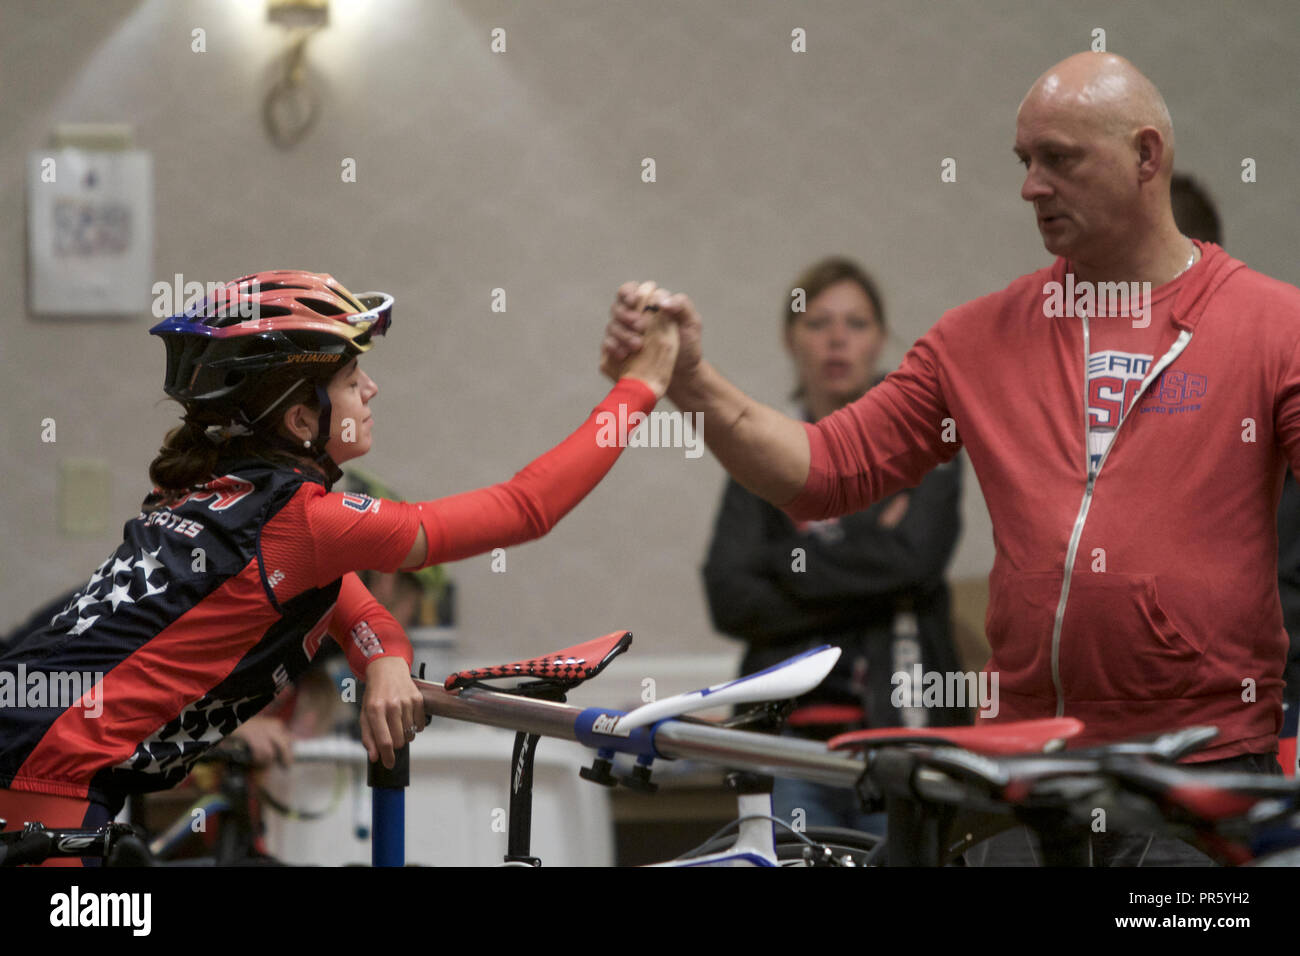 Del Campionato del mondo di ciclismo 2015 a Richmond, Virginia Foto Stock